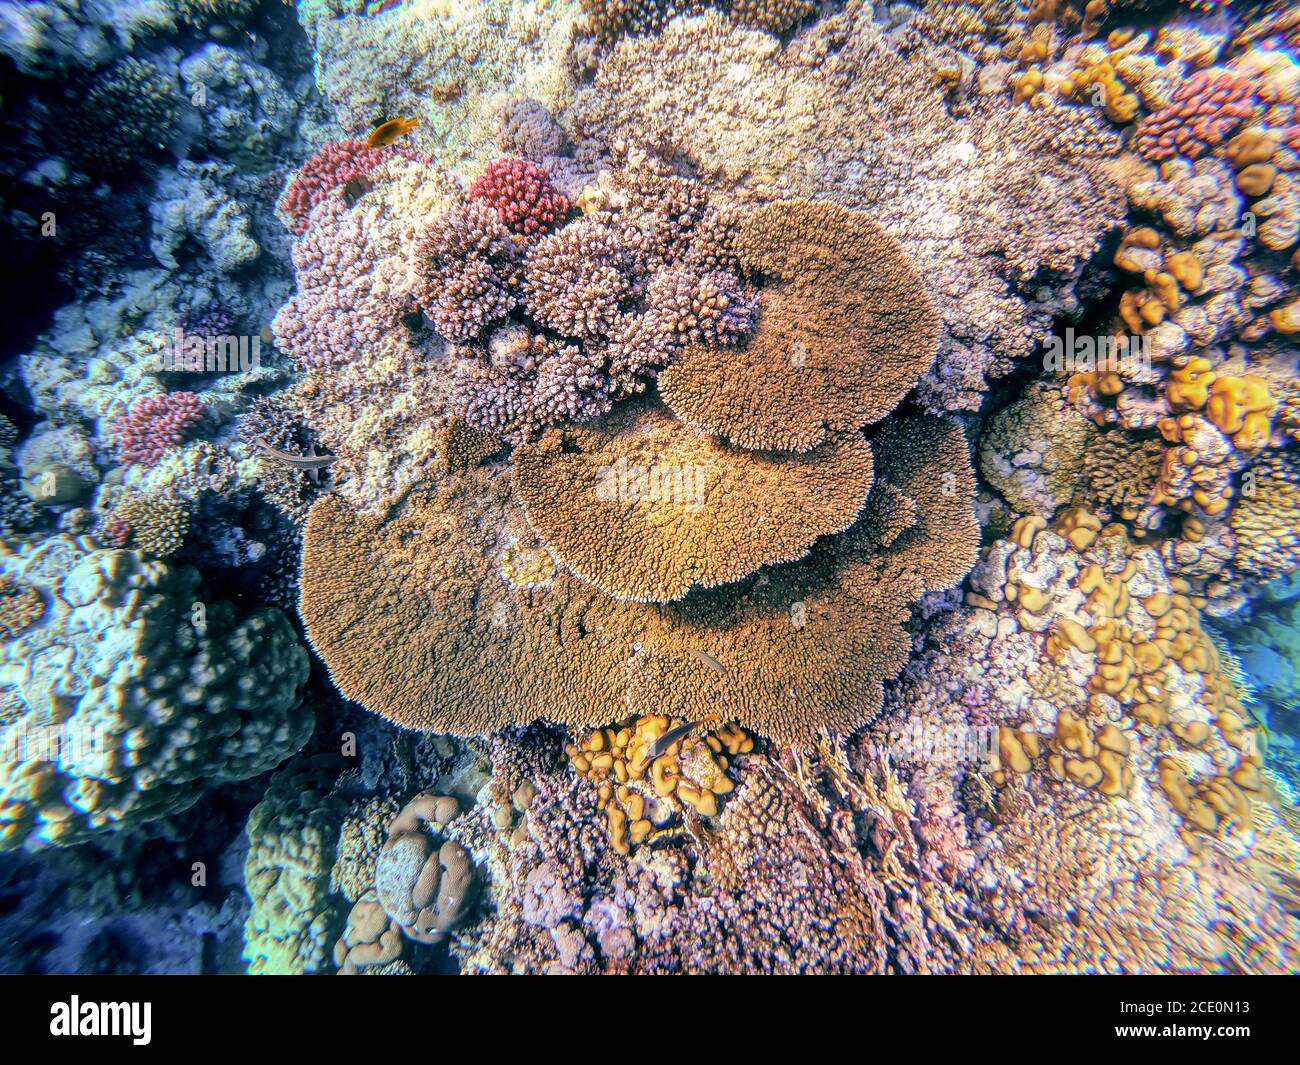 Jardin de corail en mer Rouge, Marsa Alam, Egypte Banque D'Images